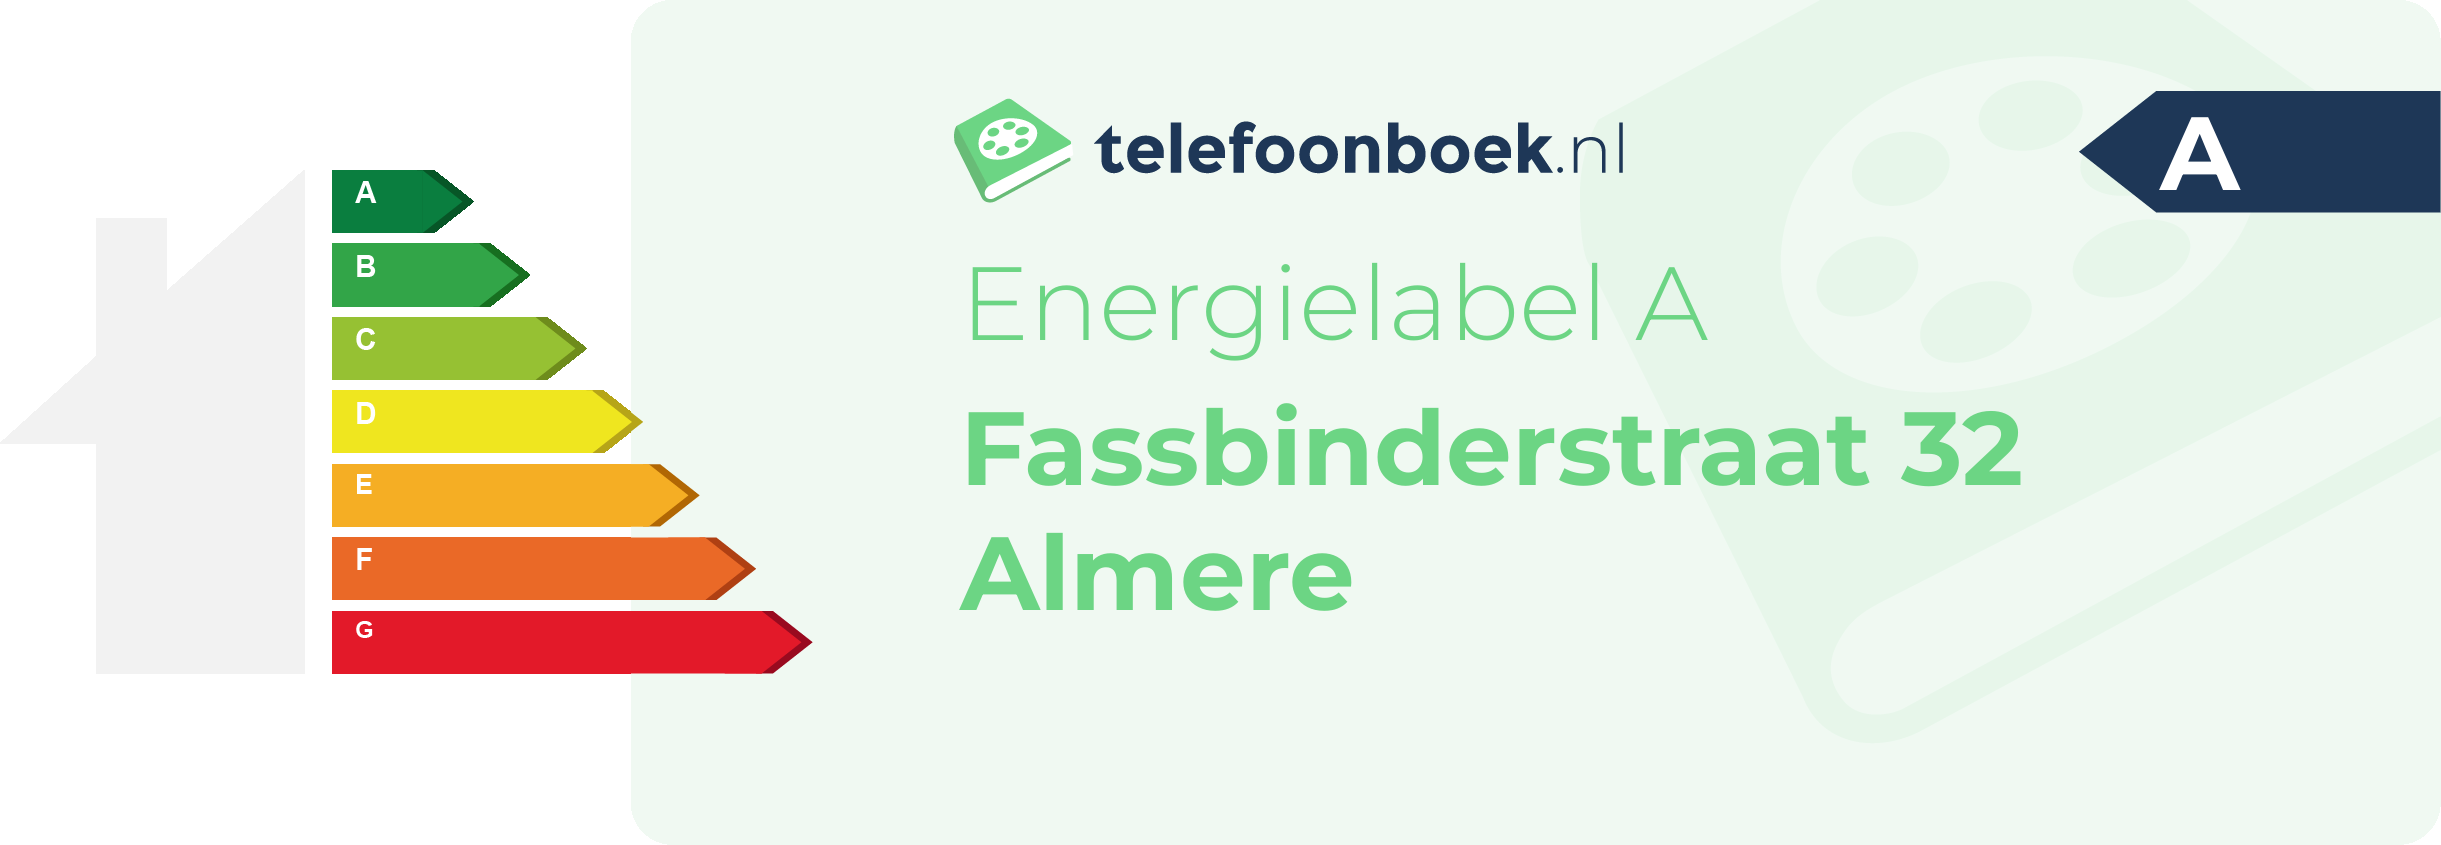 Energielabel Fassbinderstraat 32 Almere